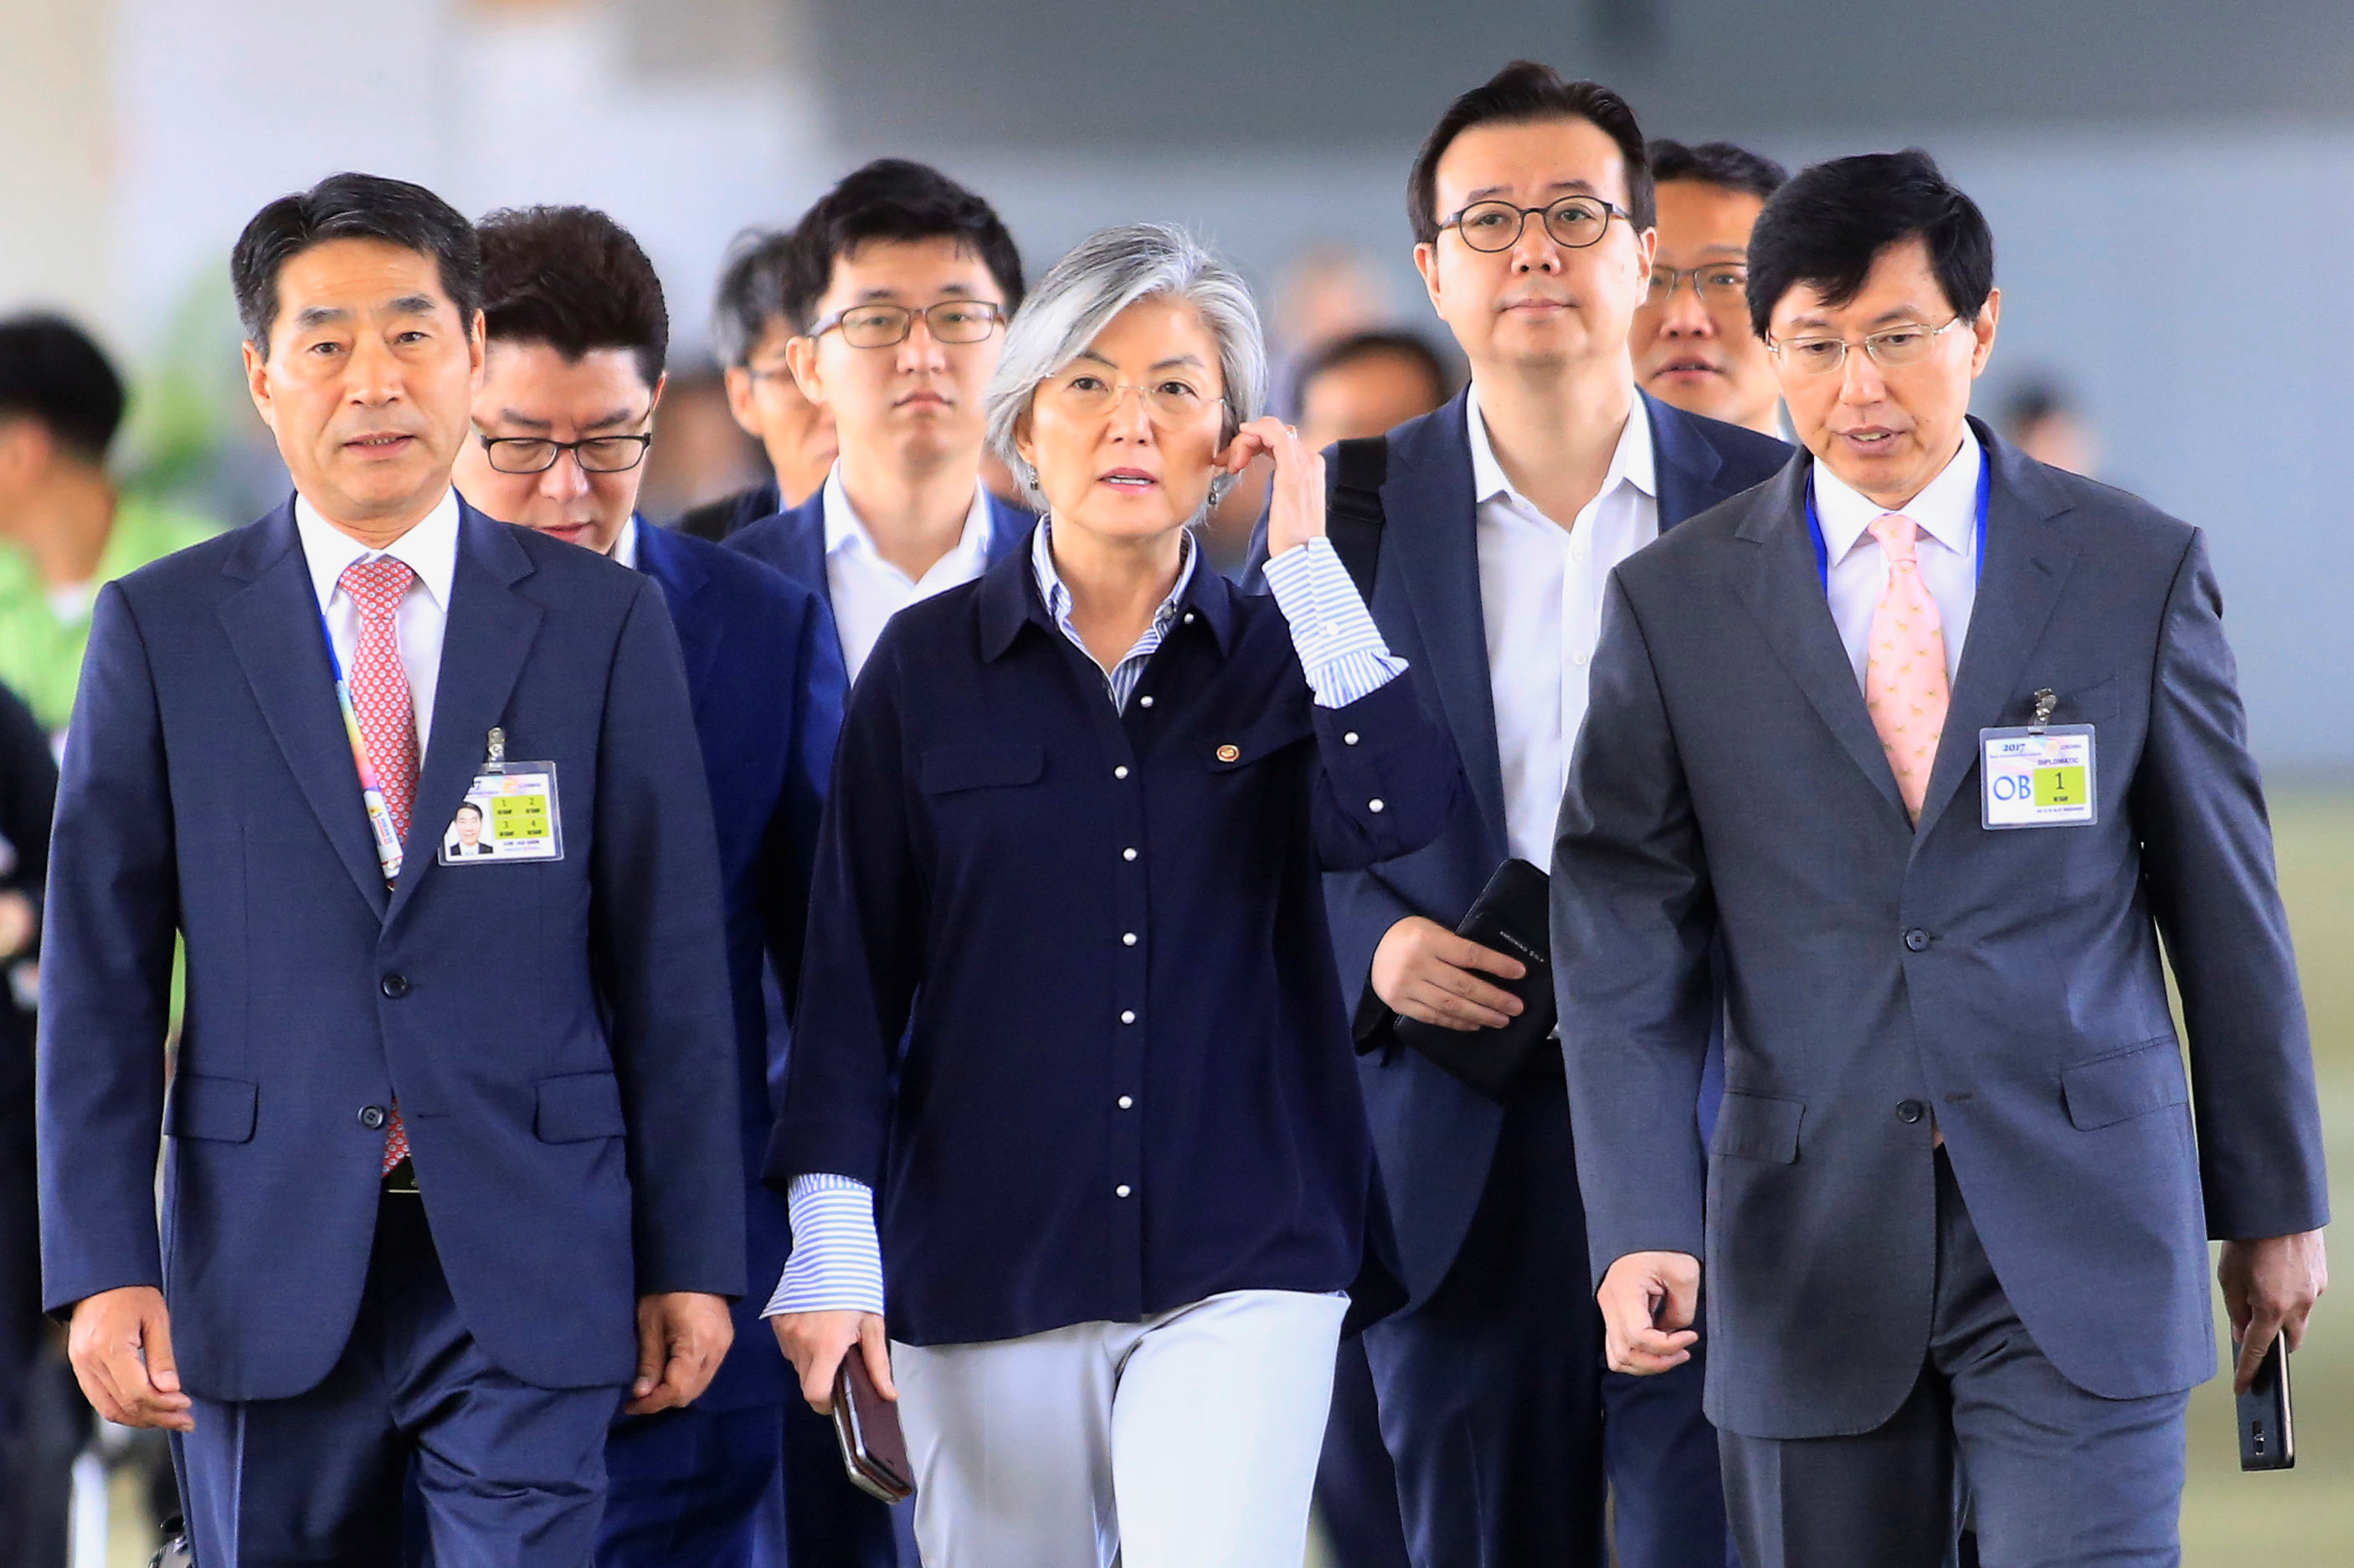 وصول وزيرة خارجية كوريا الجنوبية والوفد المرافق لها لحضور اجتماع آسيان